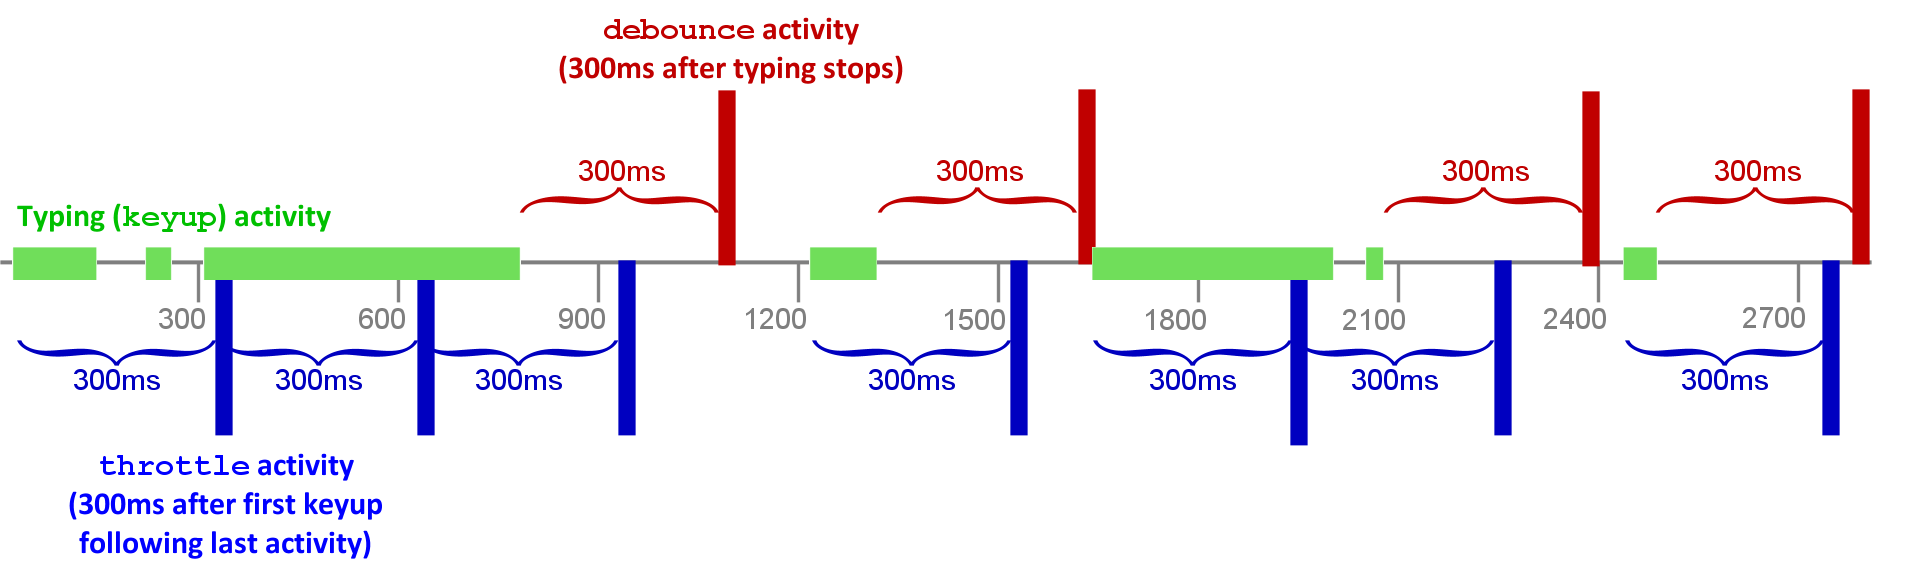 Diagram depicting debouncing onKeyup events versus throttling onKeyUp events